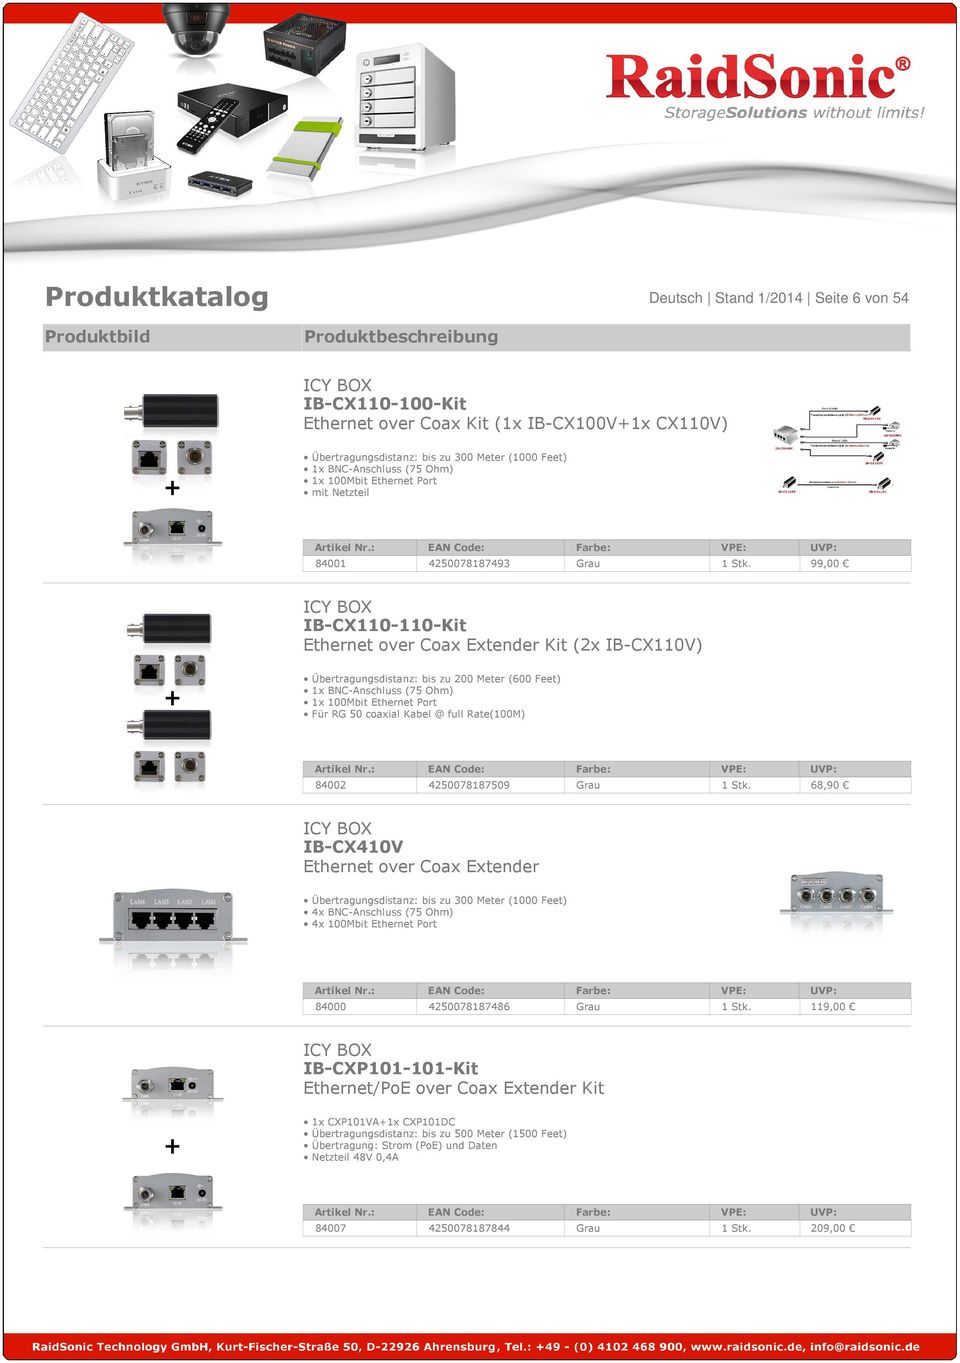 99,00 IB-CX110-110-Kit Ethernet over Coax Extender Kit (2x IB-CX110V) Übertragungsdistanz: bis zu 200 Meter (600 Feet) 1x BNC-Anschluss (75 Ohm) 1x 100Mbit Ethernet Port Für RG 50 coaxial Kabel @